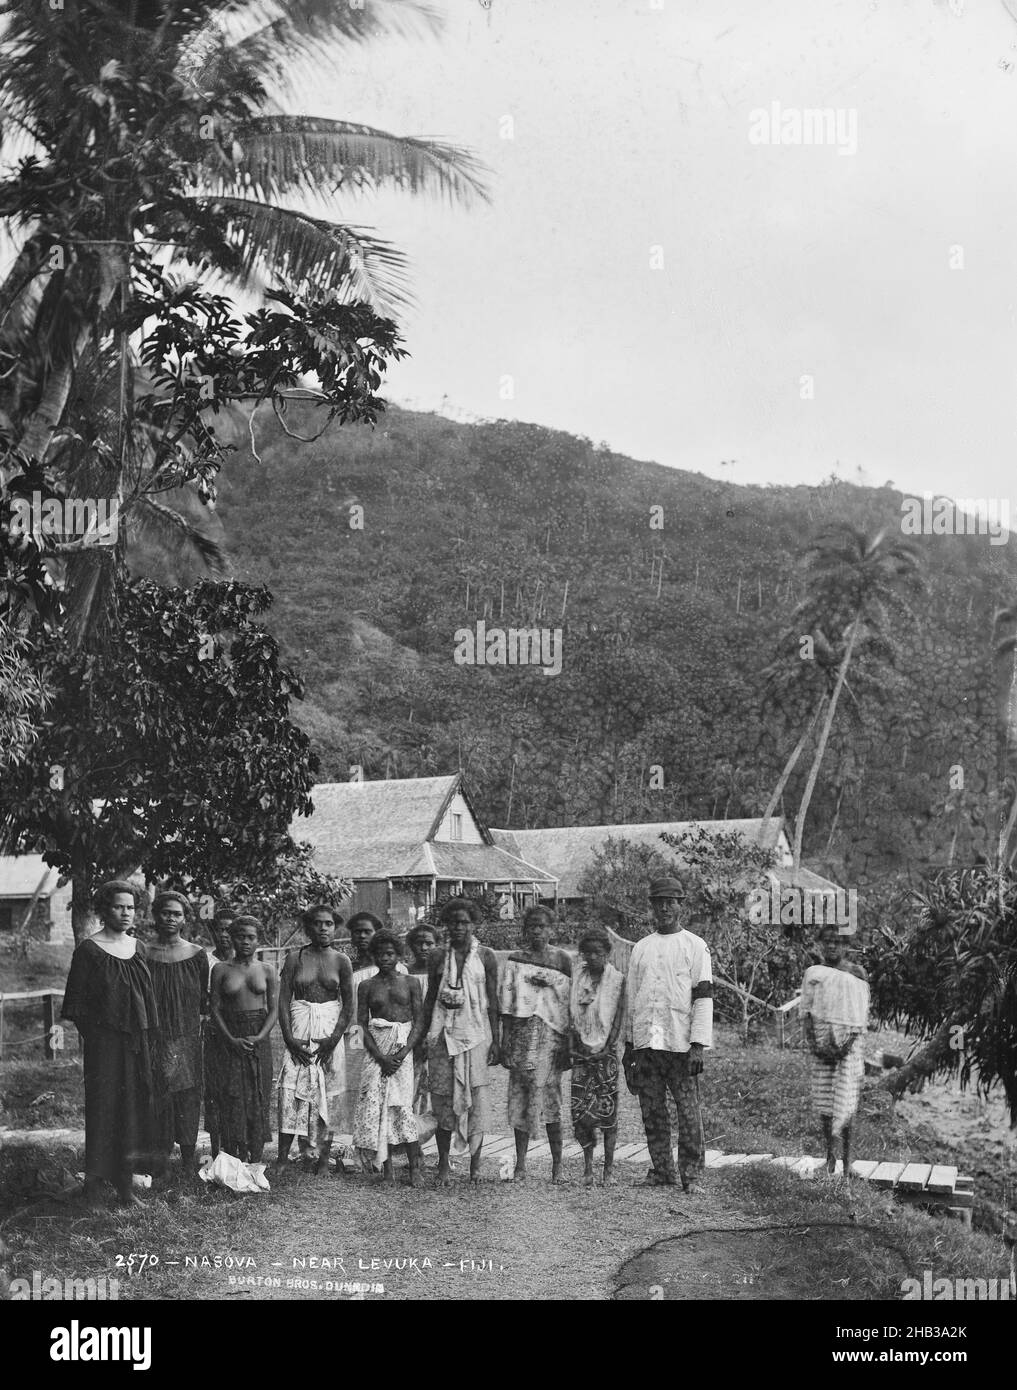 Nasova, près de Levuka, Fidji, Burton Brothers studio, studio de photographie,14 juillet 1884, Nouvelle-Zélande, photographie en noir et blanc, 11 femmes debout dans deux rangées, un homme en uniforme en fin de rangée (à droite), puis un écart avec une femme debout seule.Tous sont fidjiens.Une route s'étend de l'avant-plan à l'arrière-plan des gens.Une clôture et une rangée de maisons coloniales sont visibles.Les cocotiers s'encourent jusqu'à une haute colline qui s'élève fortement en arrière-plan Banque D'Images